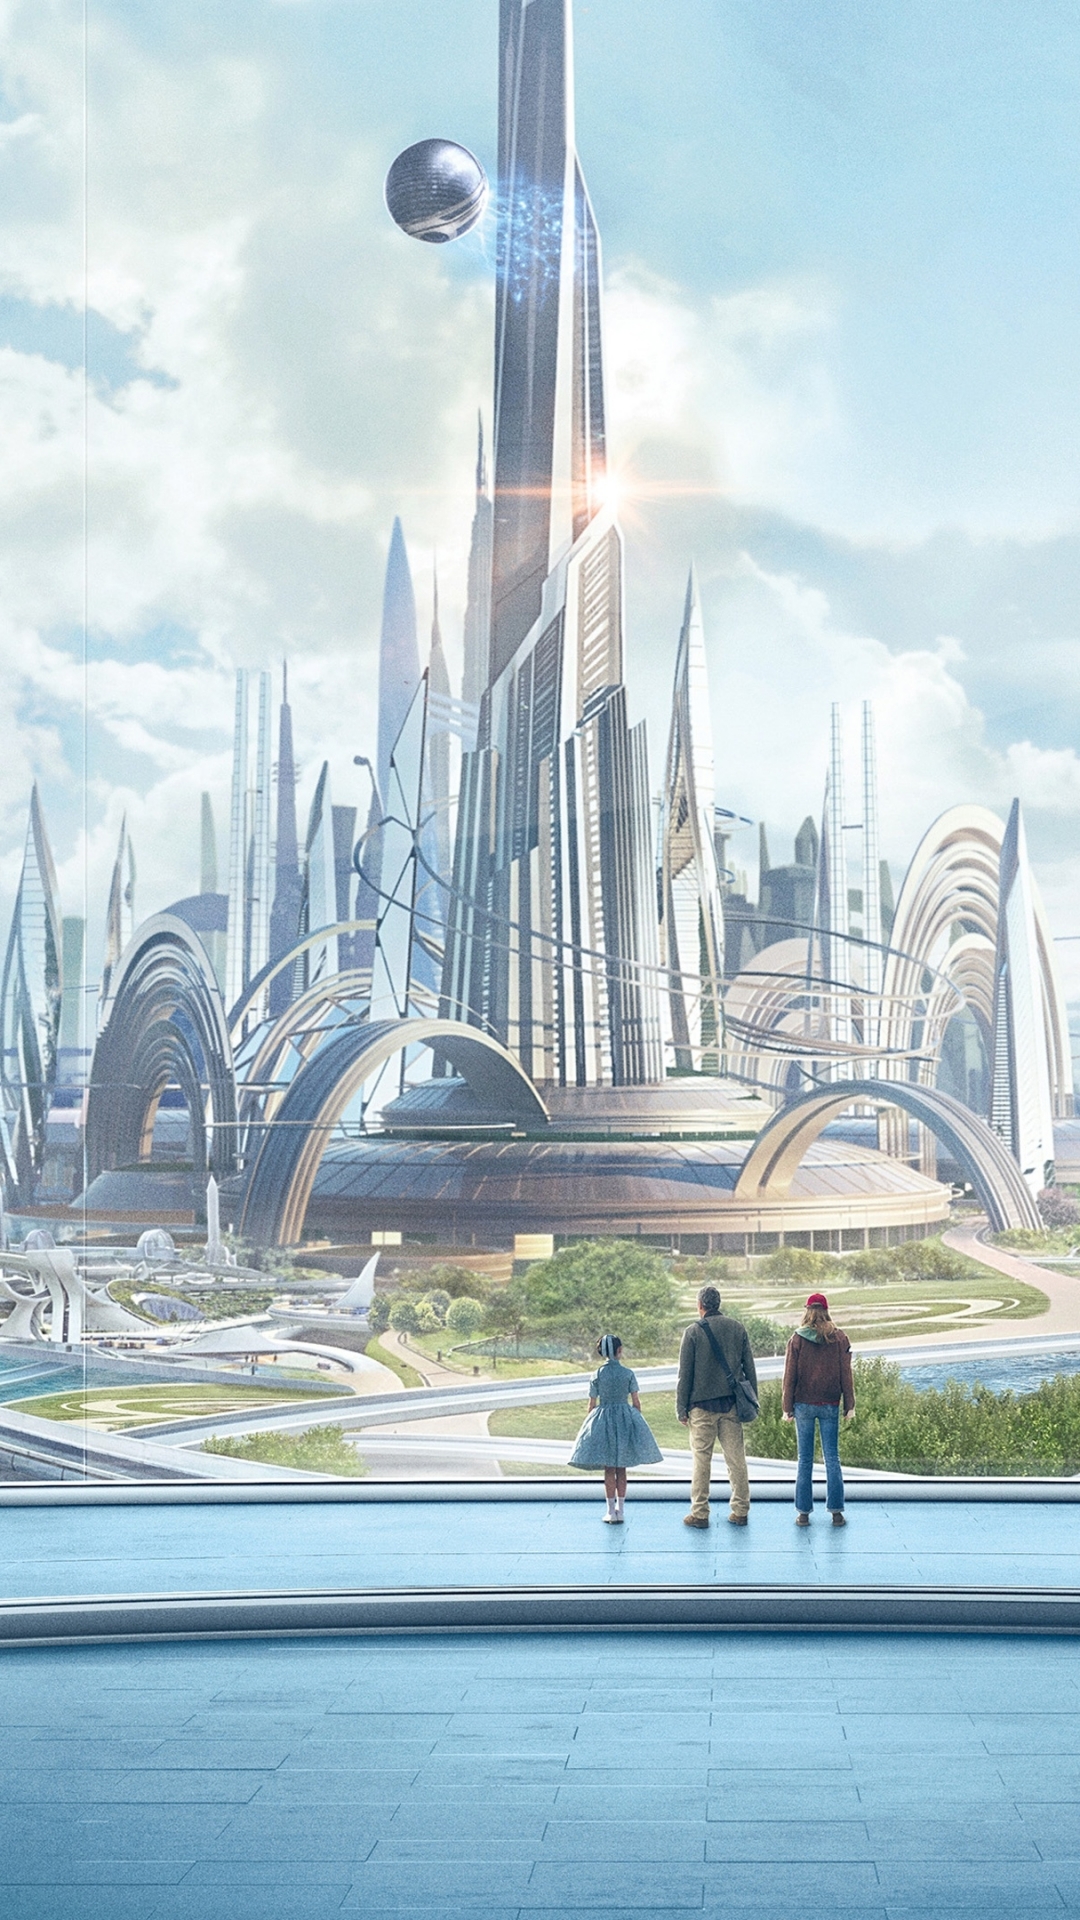 Descarga gratuita de fondo de pantalla para móvil de Ciencia Ficción, Tomorrowland: El Mundo Del Mañana.